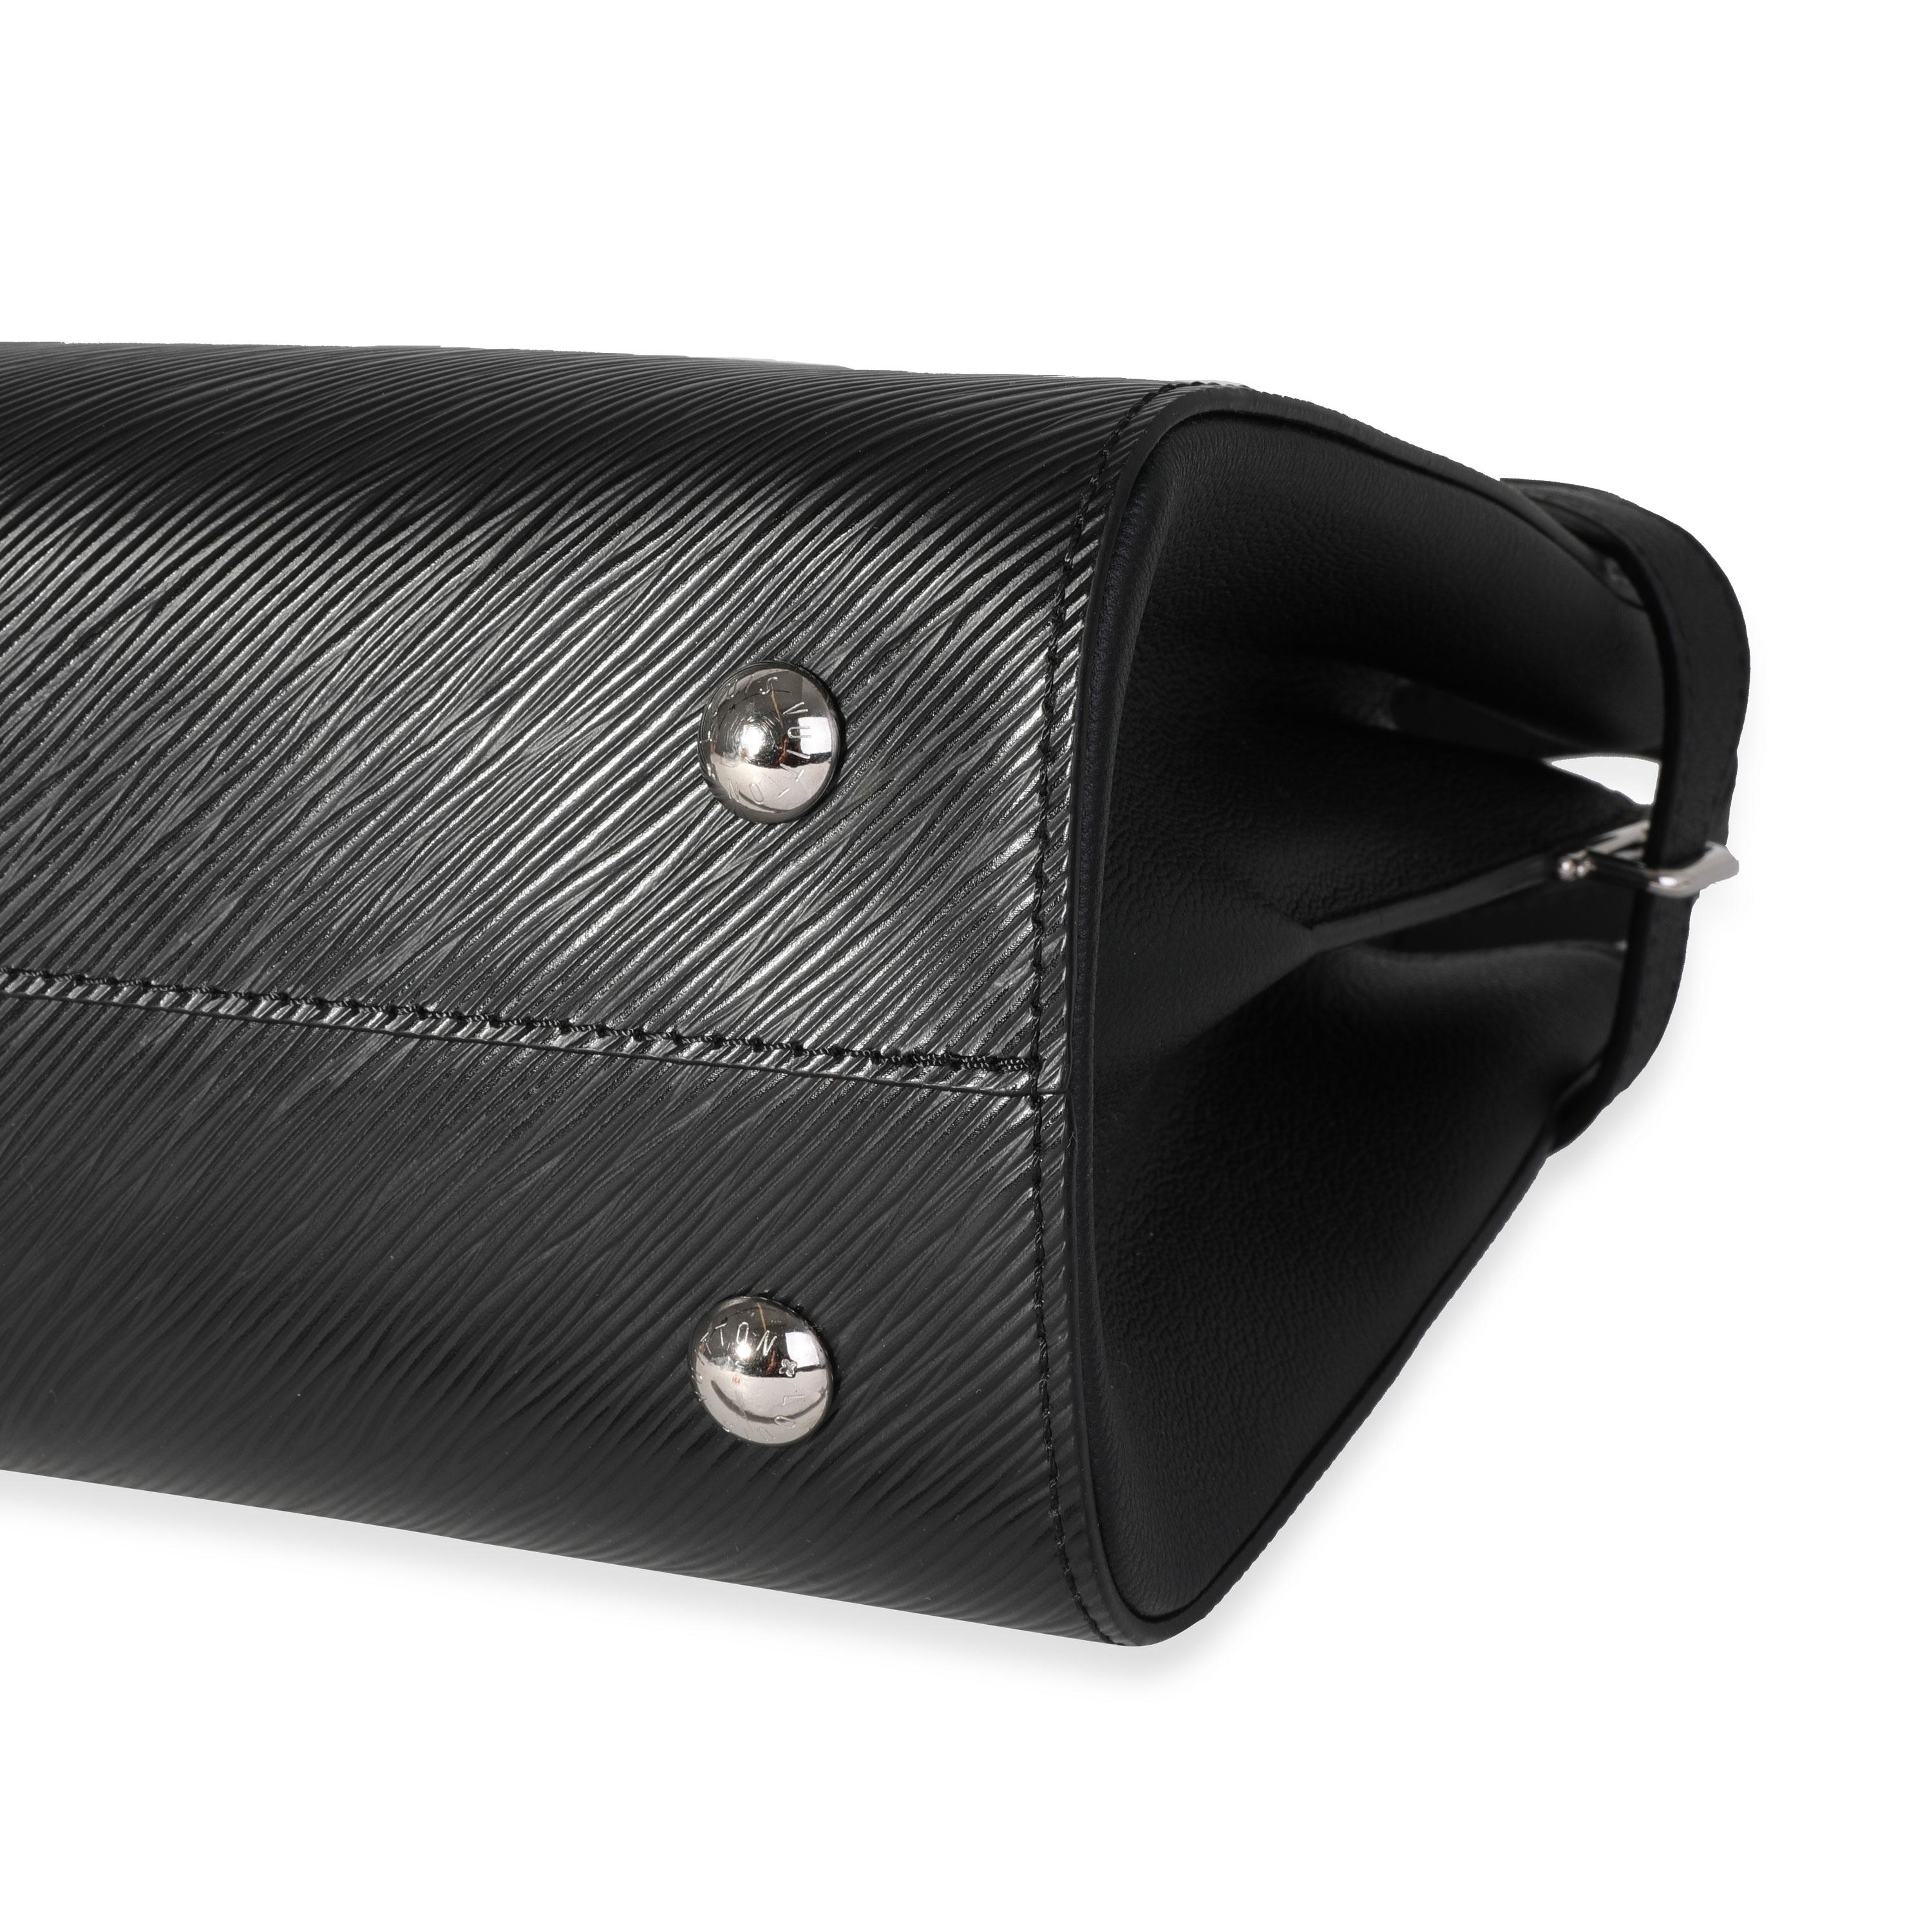 Louis Vuitton Black Epi Leather Twist Tote 1